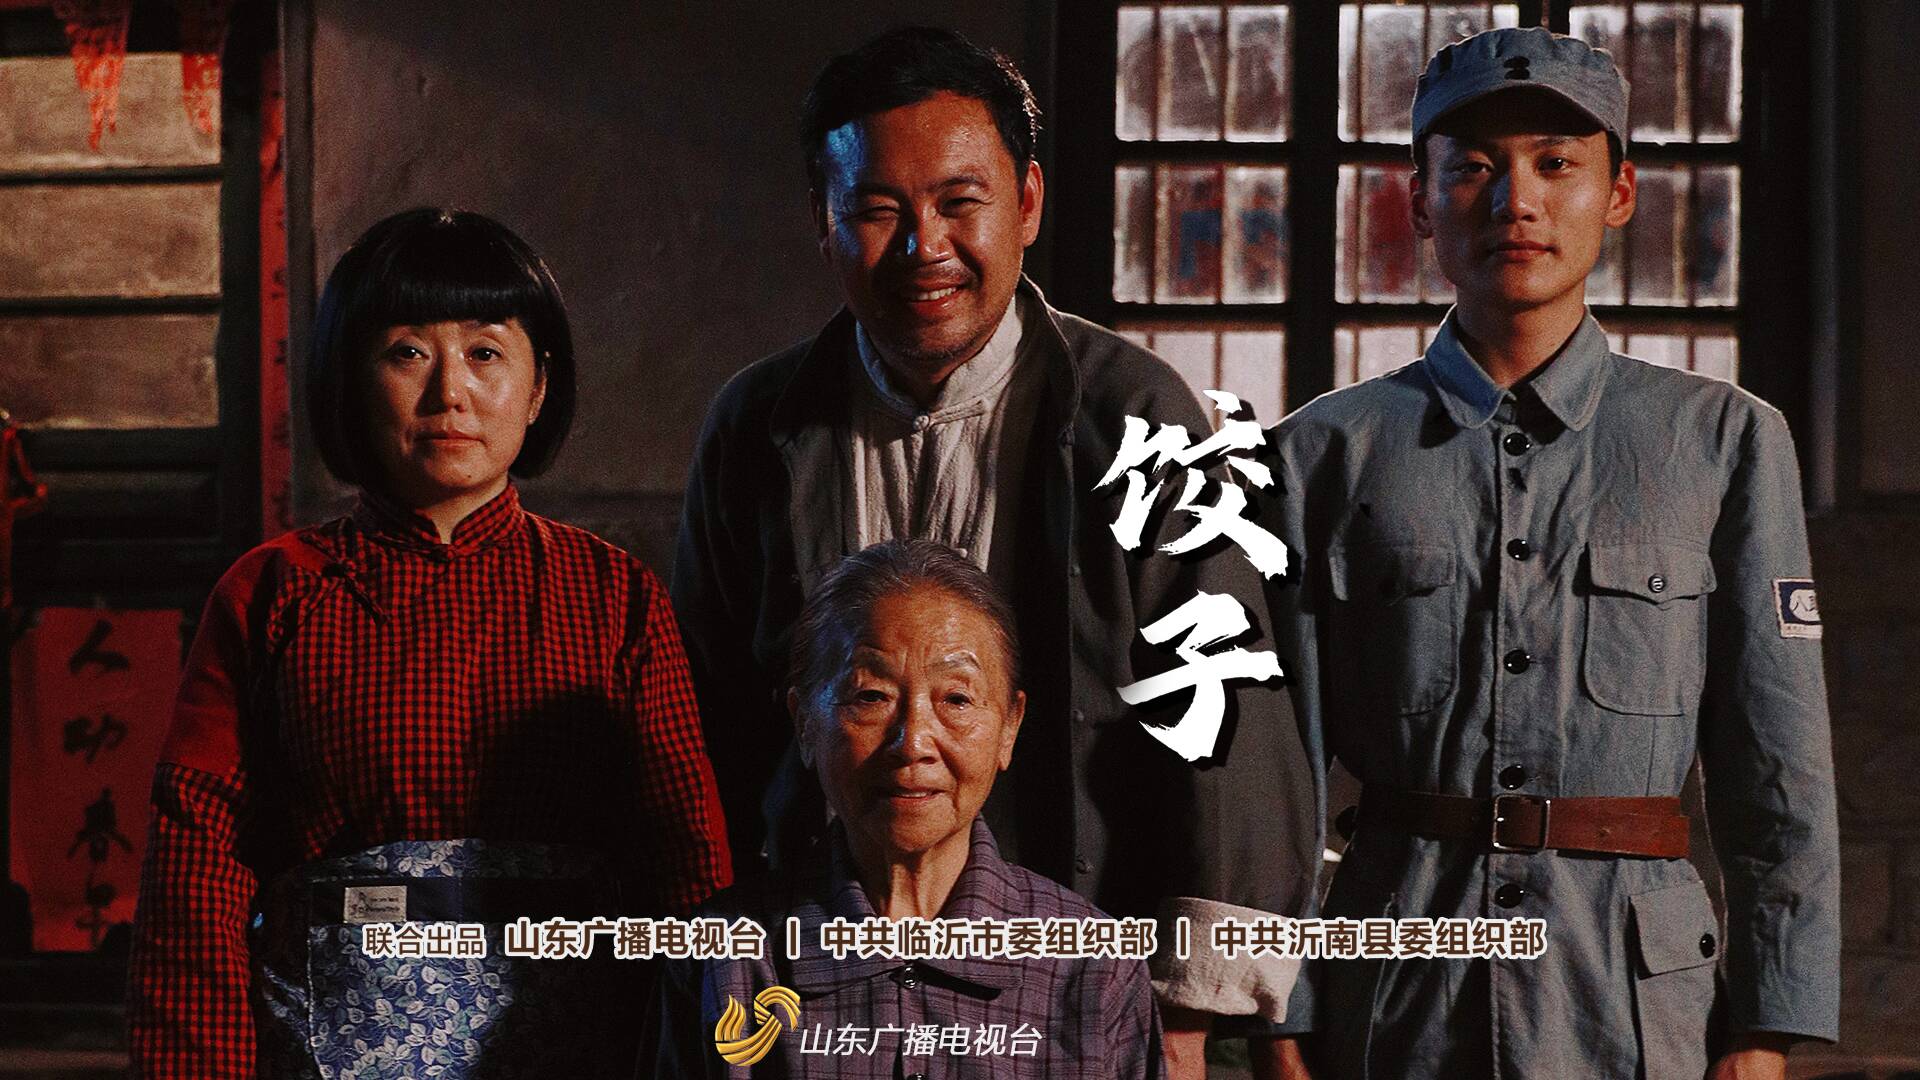 以沂蒙“红嫂”故事为原型 山东台推出微电影《饺子》